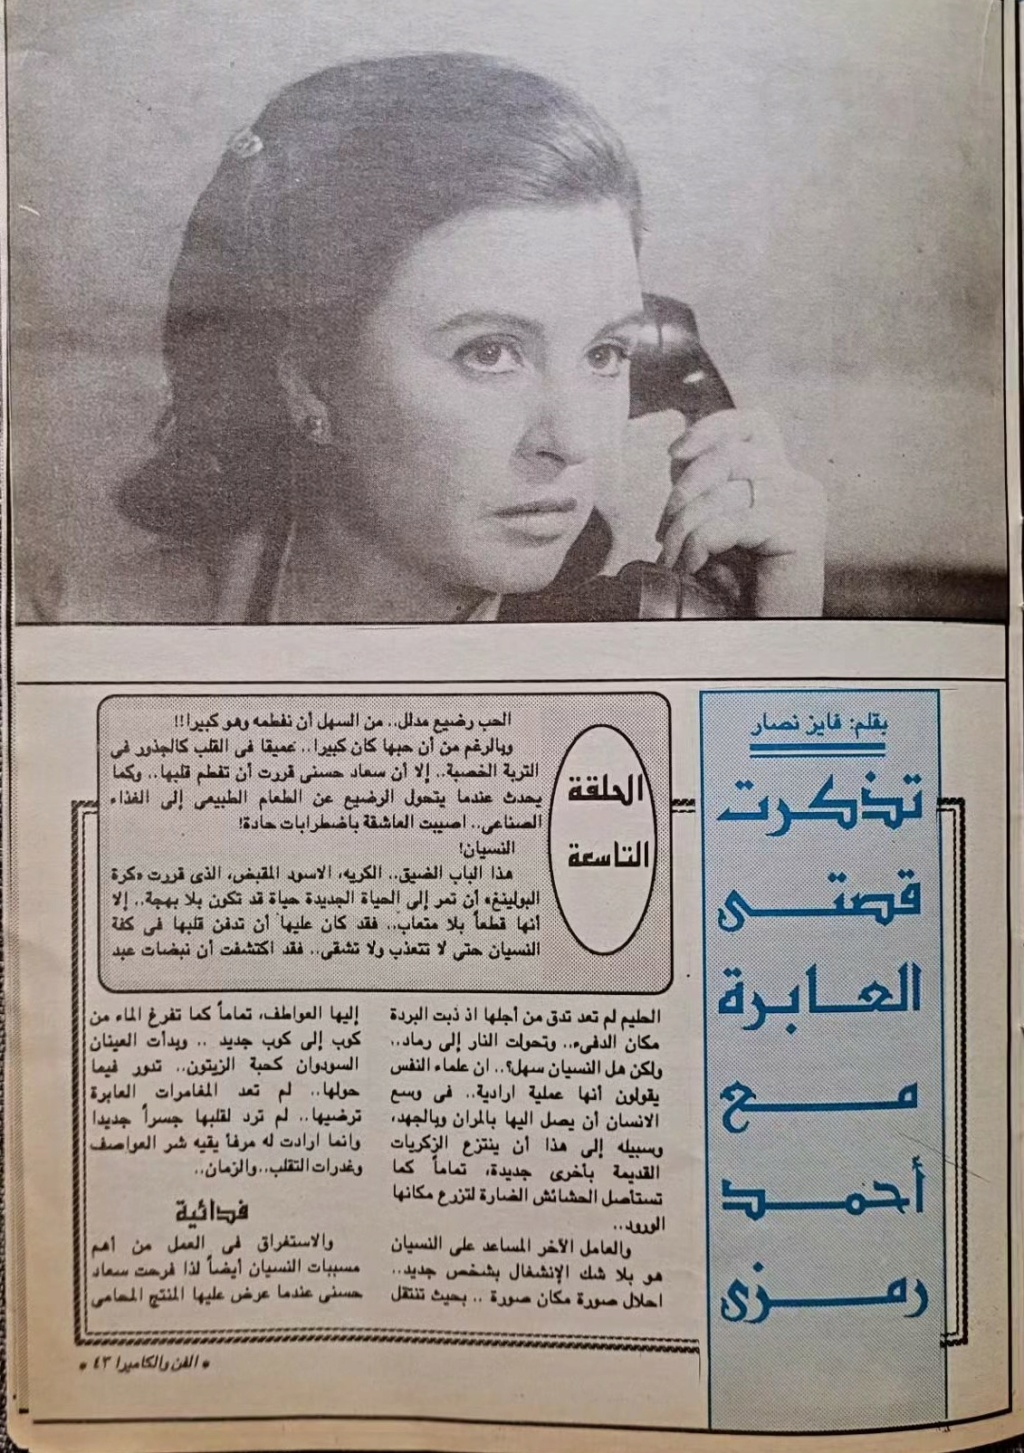 سعاد - مقال صحفي : سعاد حسني تتذكر .. اختفيت وحبيبي الجديد وراء الأهرام 1992 م 289